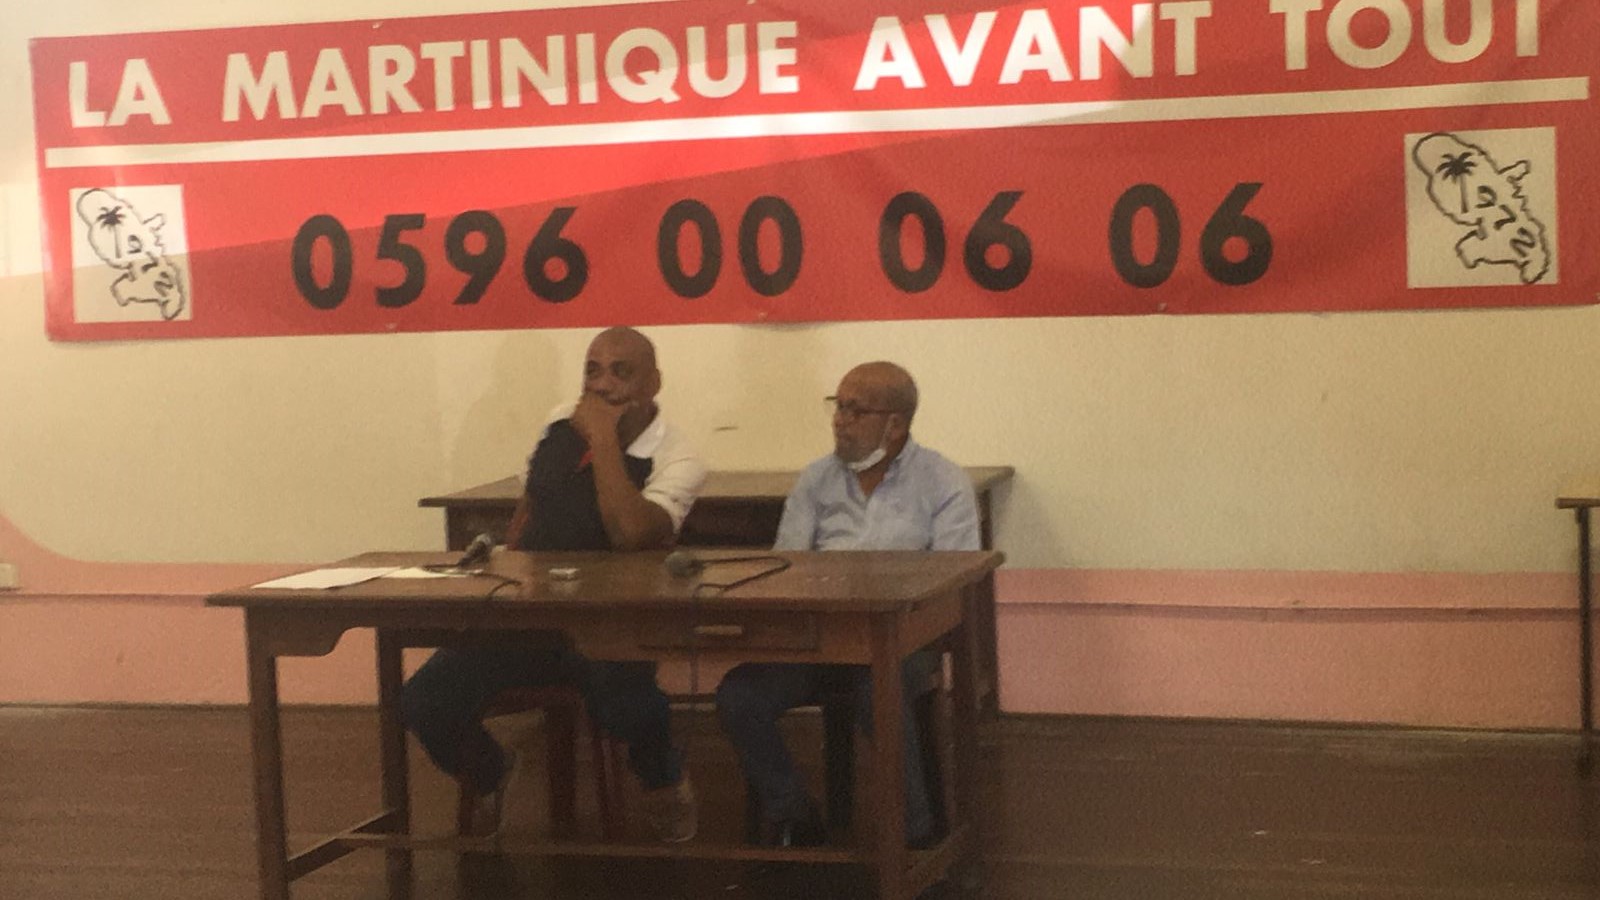     "La Martinique avant tout" : candidat aux législatives, Joël Bardet souhaite mobiliser les électeurs martiniquais

